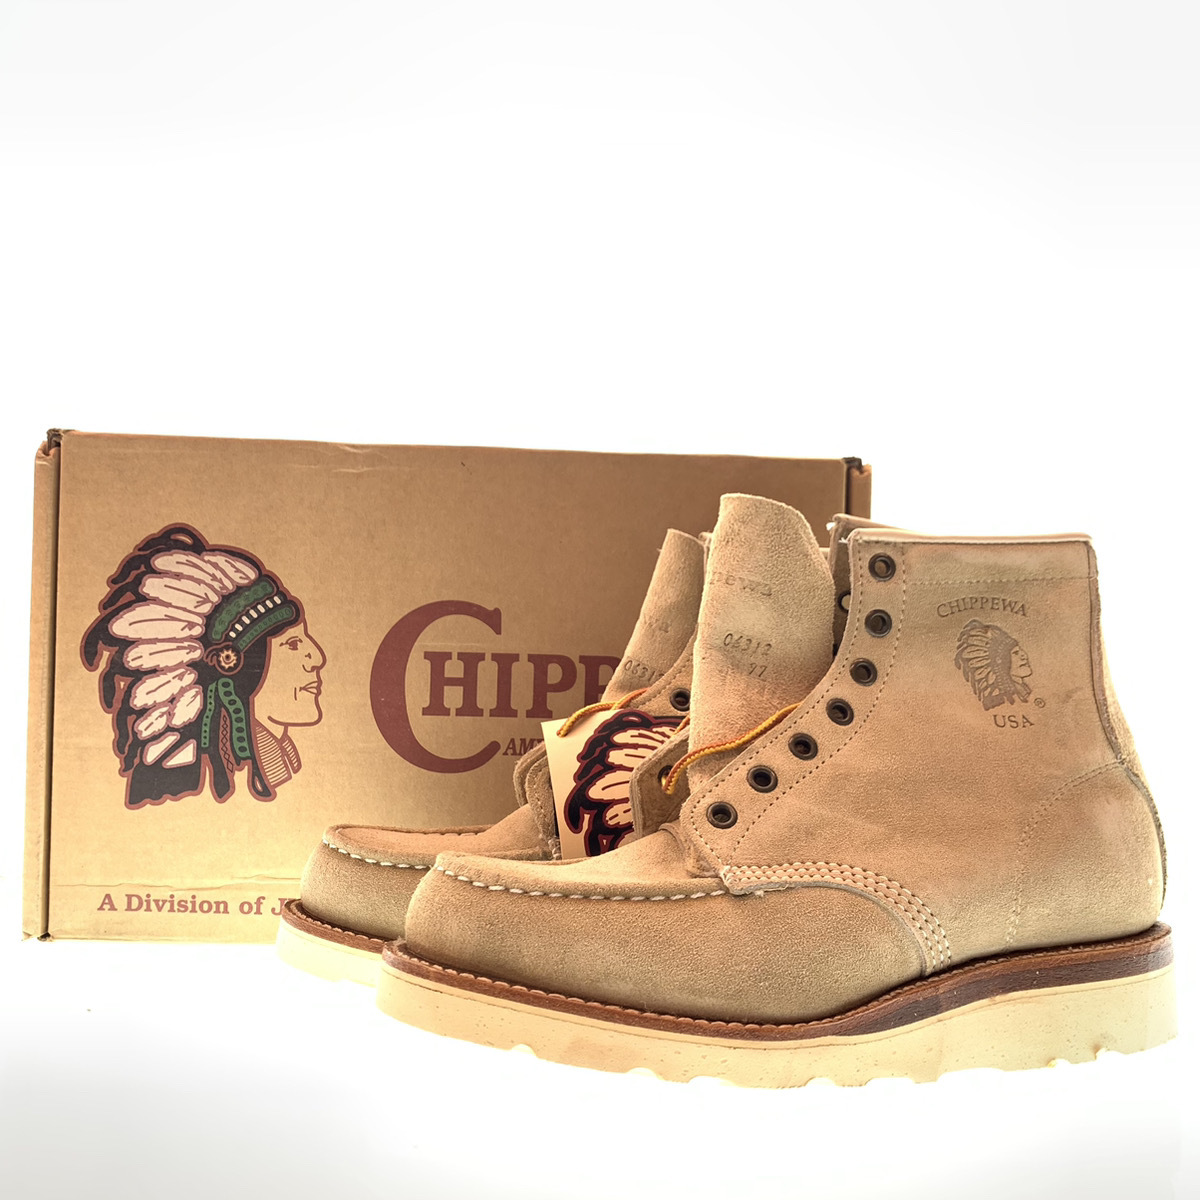 ●CHIPPEWA チペワ ワークブーツ モックトゥ Vibram ソール 白タグ 革靴 スウェード Light Browｎ ライト ブラウン 茶色 US6E 29492 104